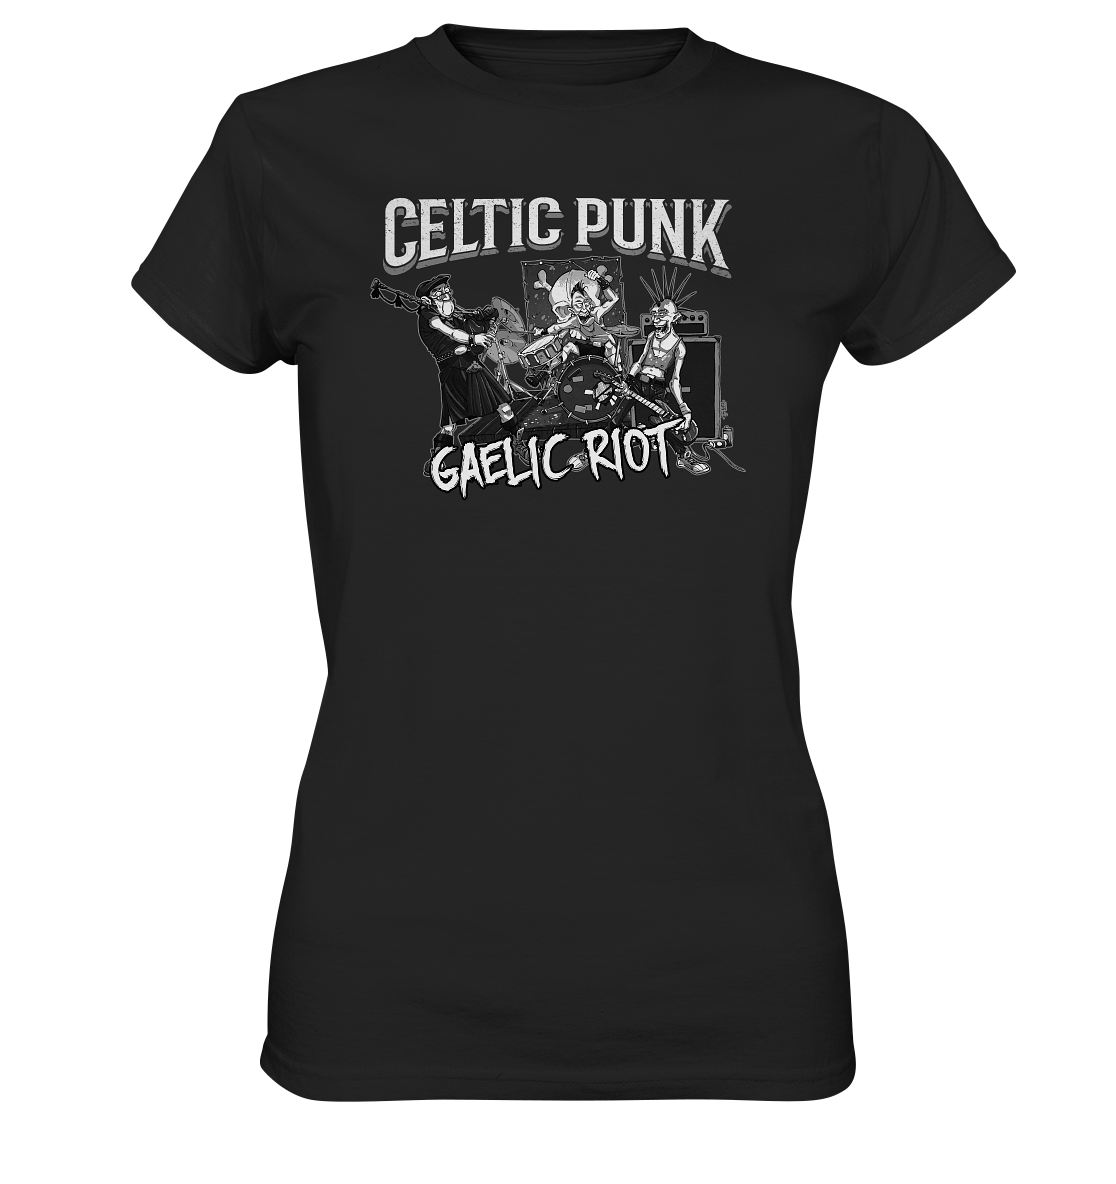 Celtic Punk "Gaelic Riot" - Ladies Premium Shirt